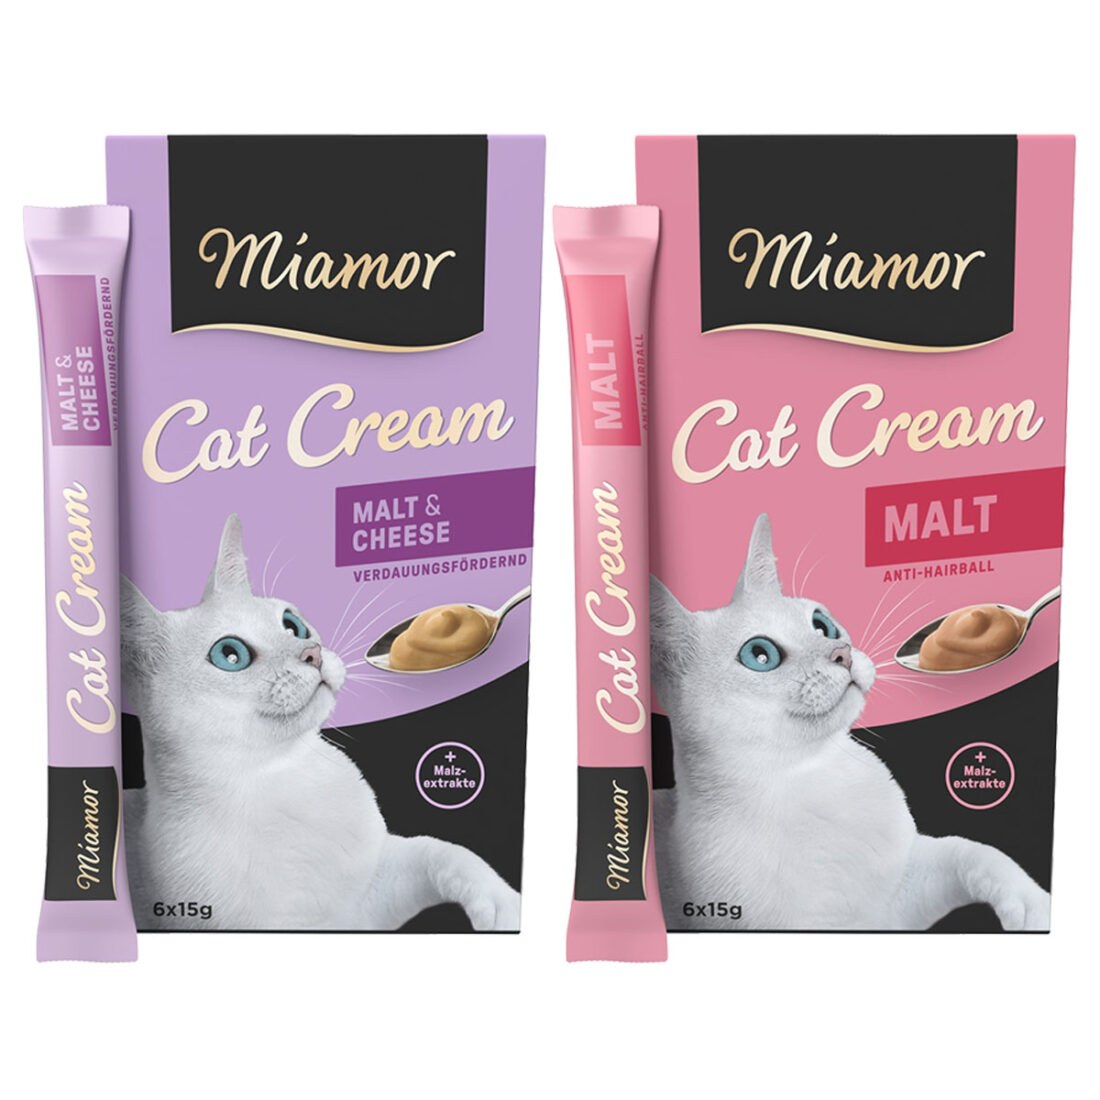 Miamor Cat Snack Cream